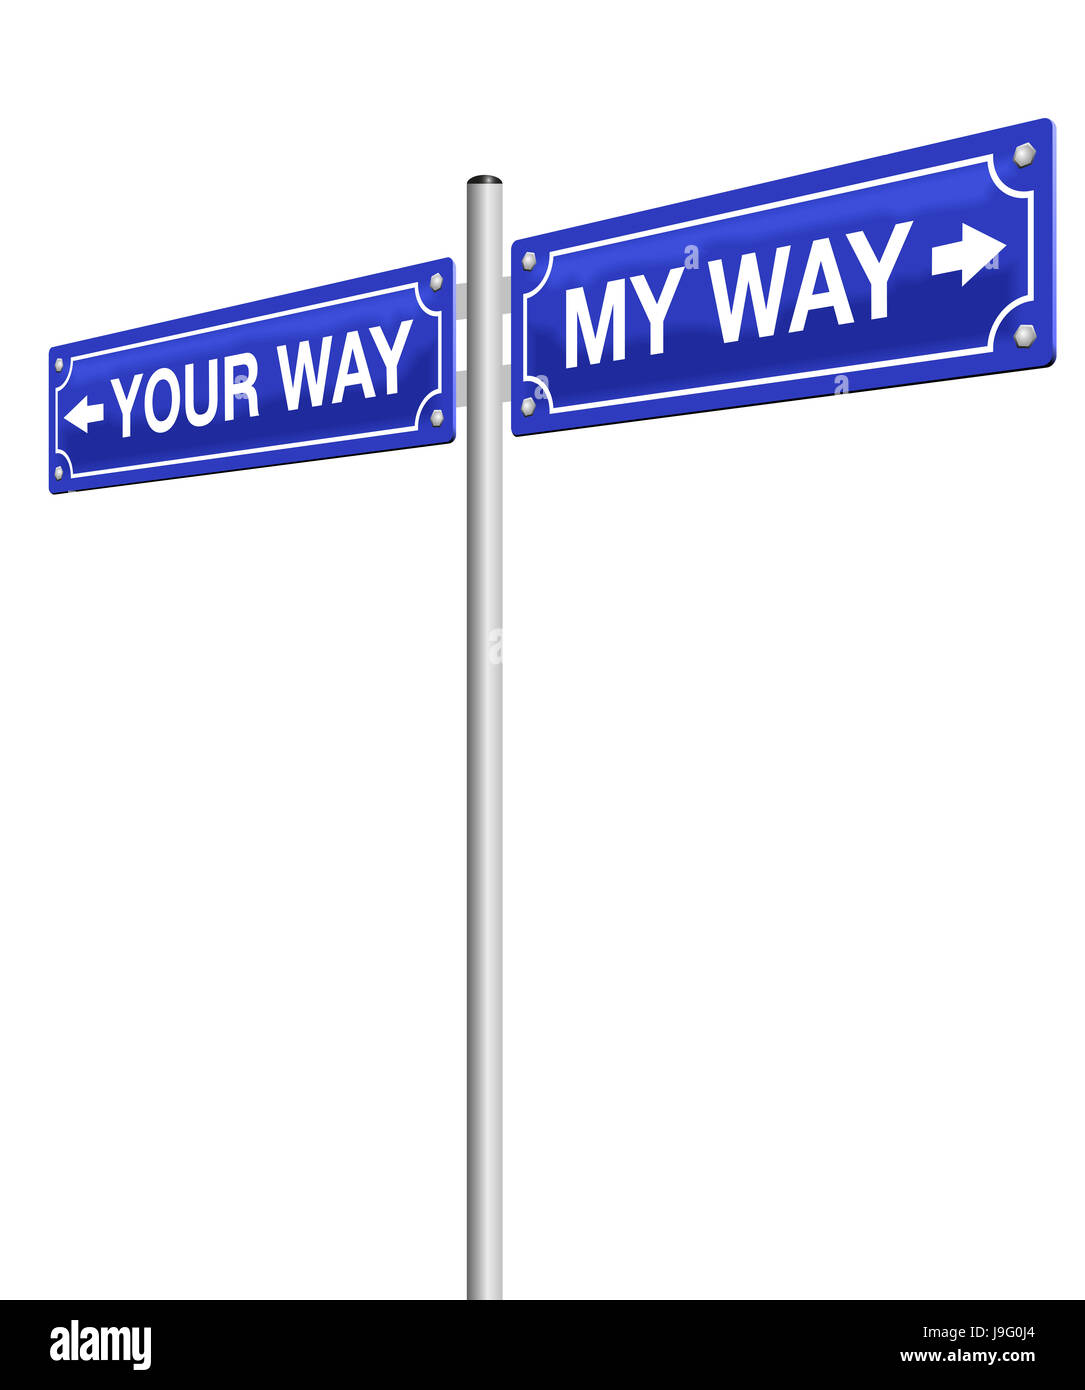 A mi manera - a su manera - señal de carretera, simbólico para el divorcio, despedida y van por caminos separados, diferentes rutas o direcciones opuestas. Foto de stock